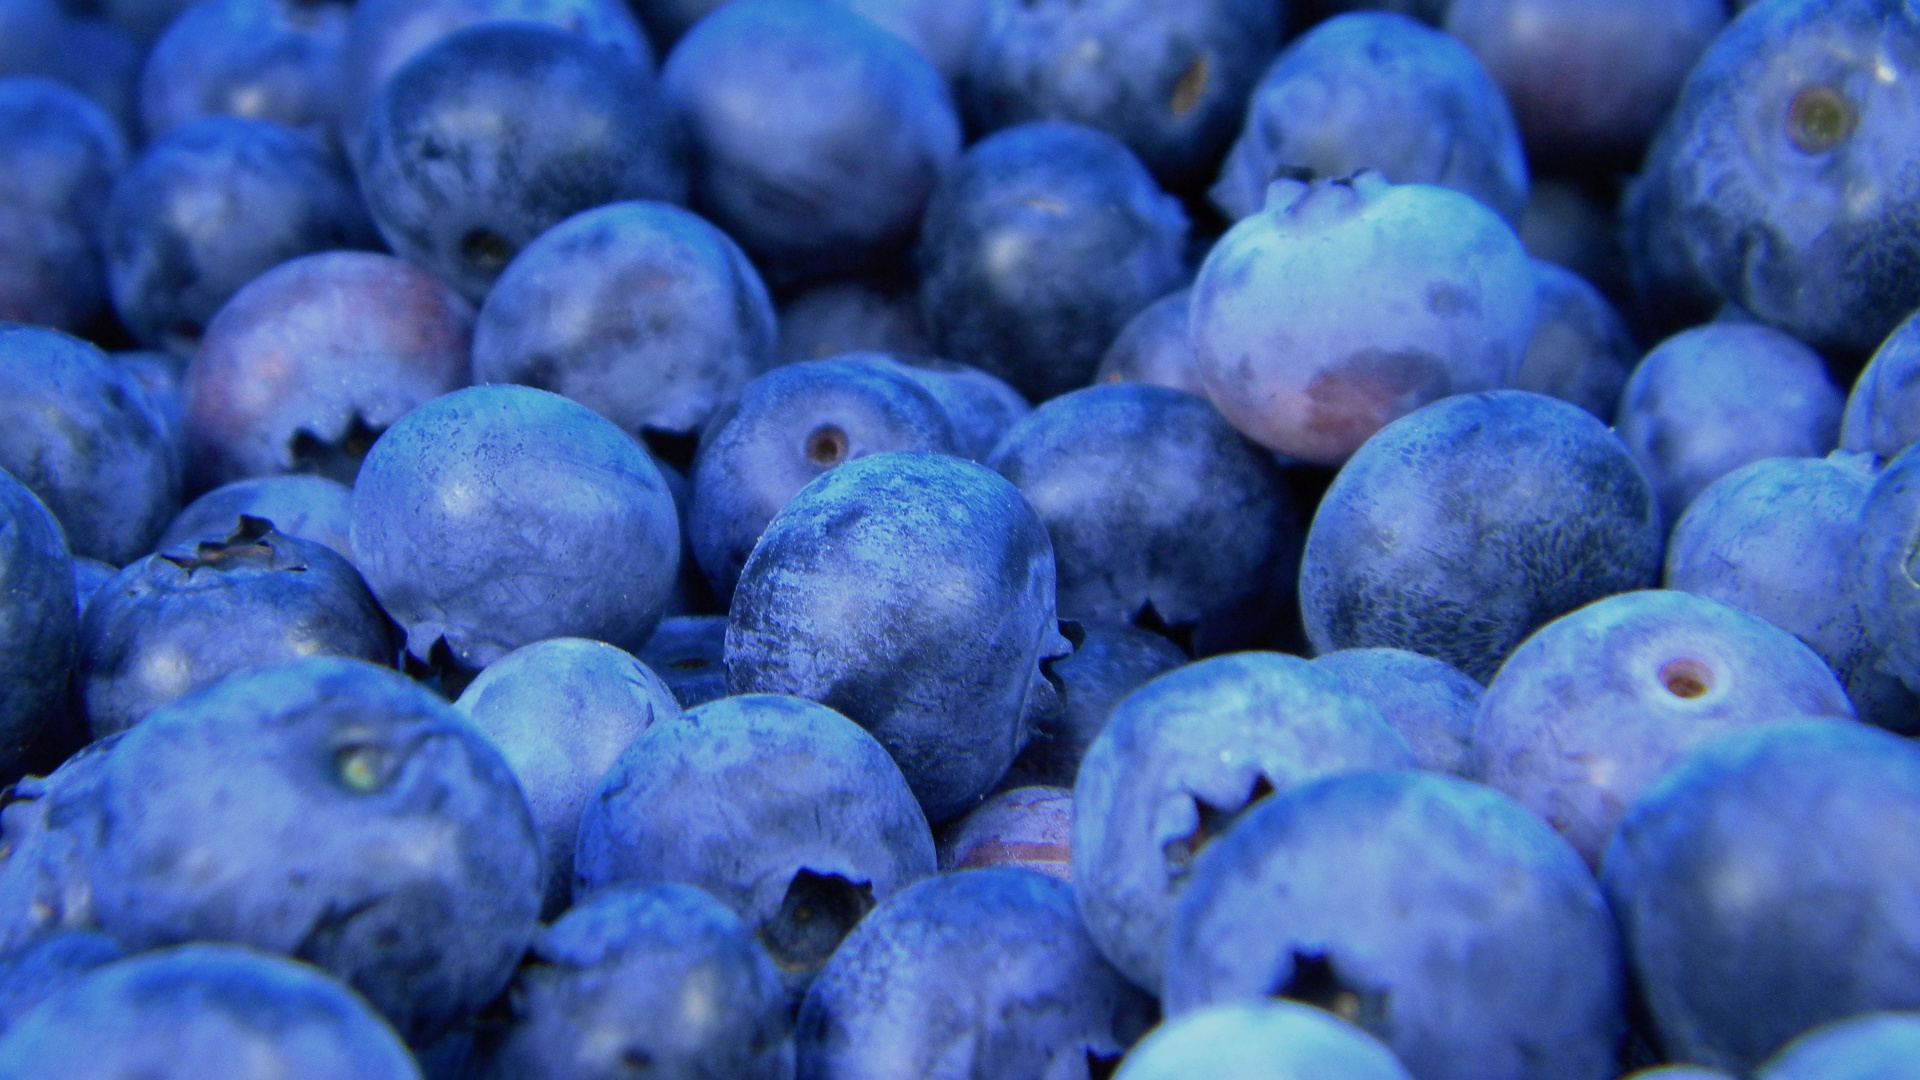 蓝莓, 无核果, 食品, 工厂, 味道 壁纸 1920x1080 允许